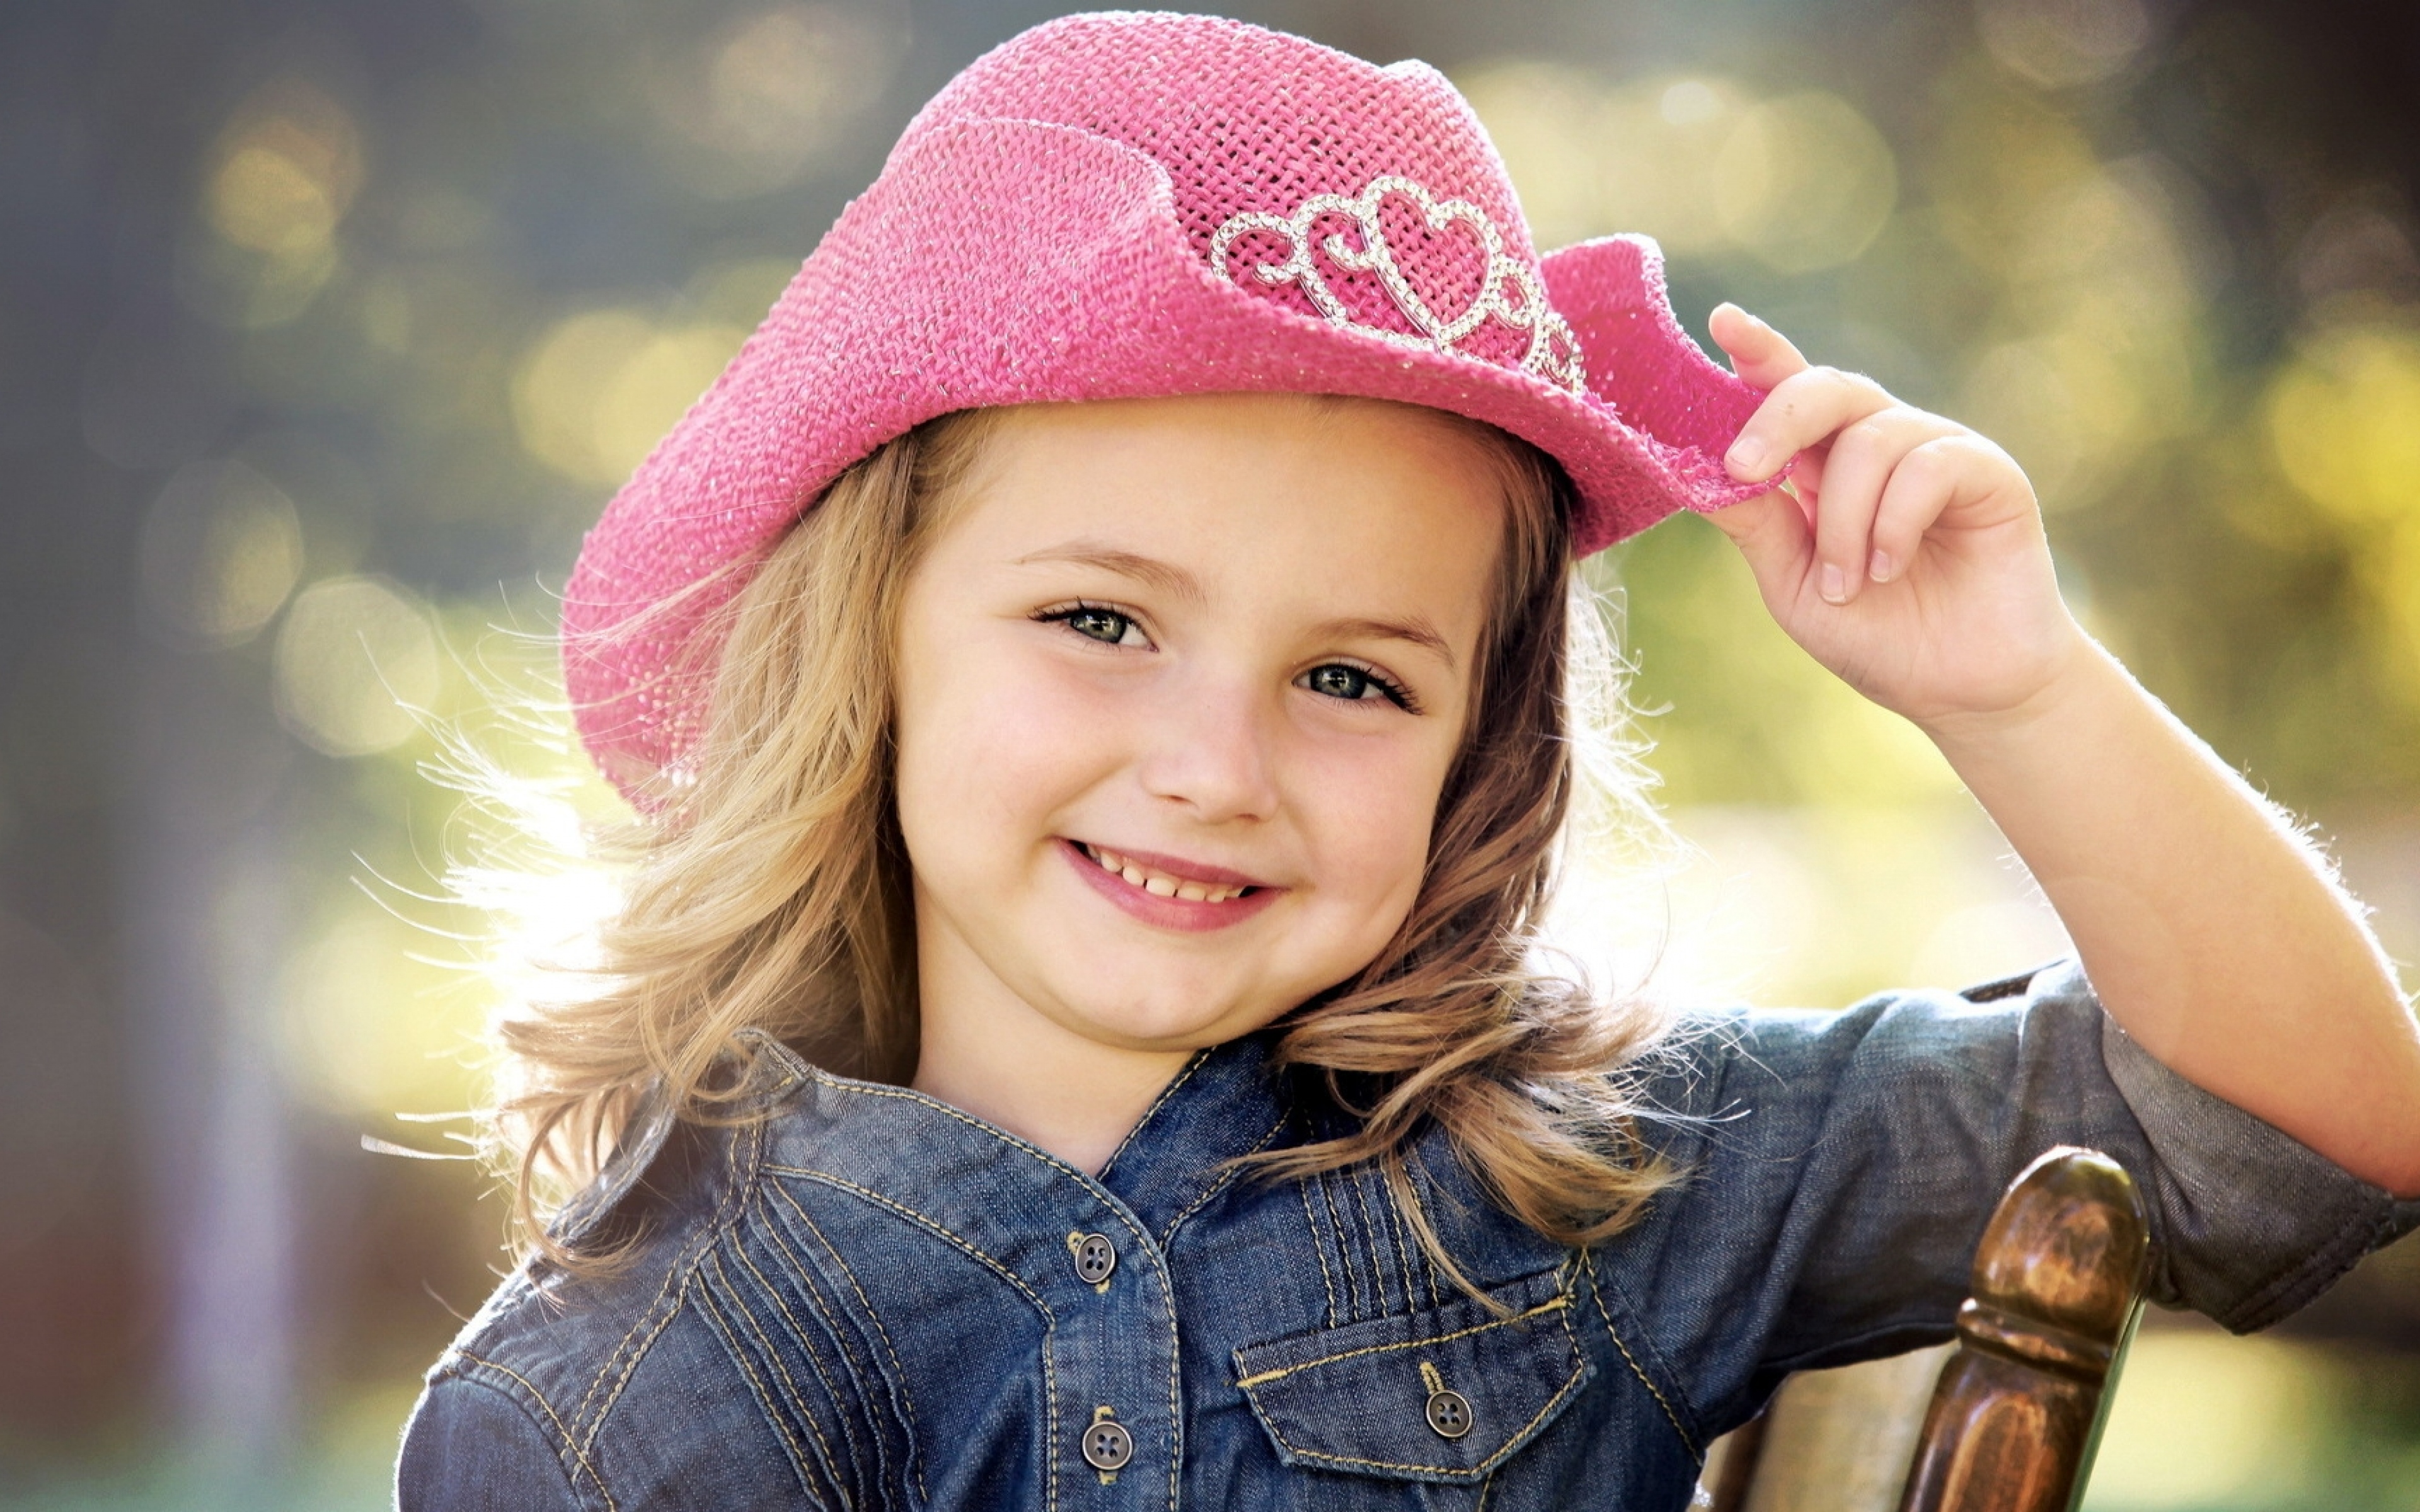 Kind hat. Девочка в шляпе. Маленькие девчонки. Шляпа для детей. Шляпка для девочки.